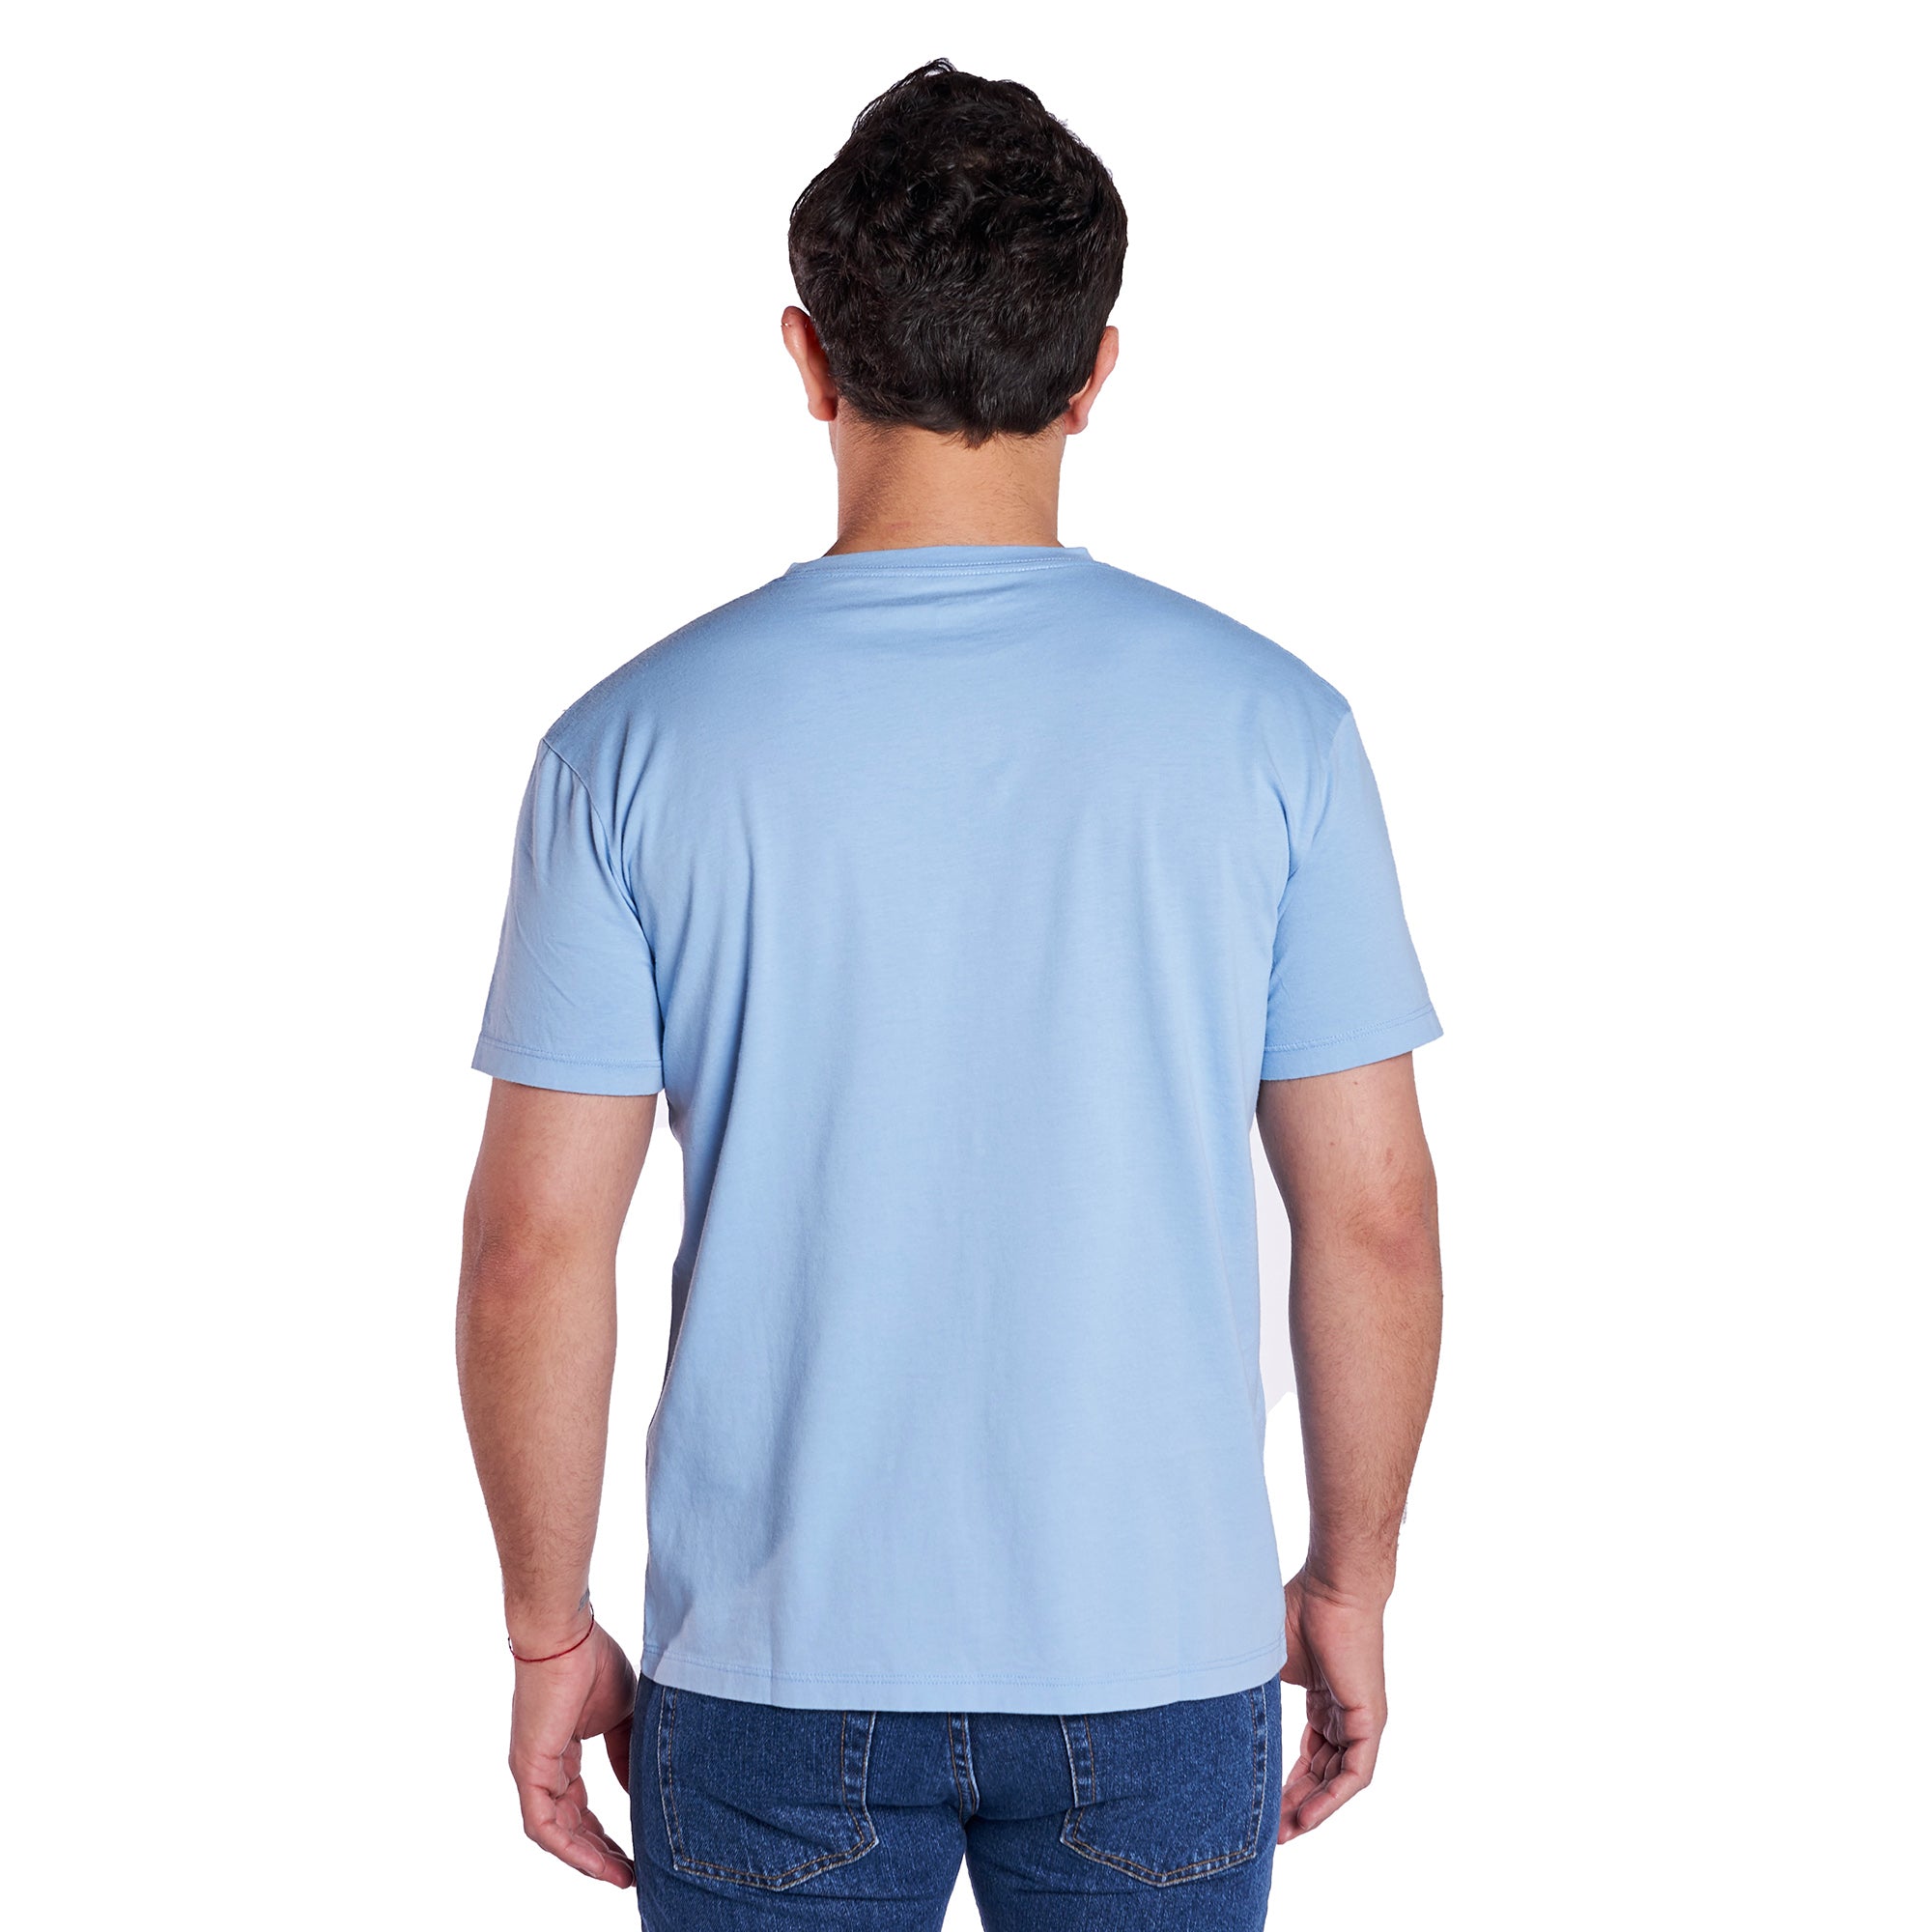 Vintage Crew T-Shirt - Pale Blue